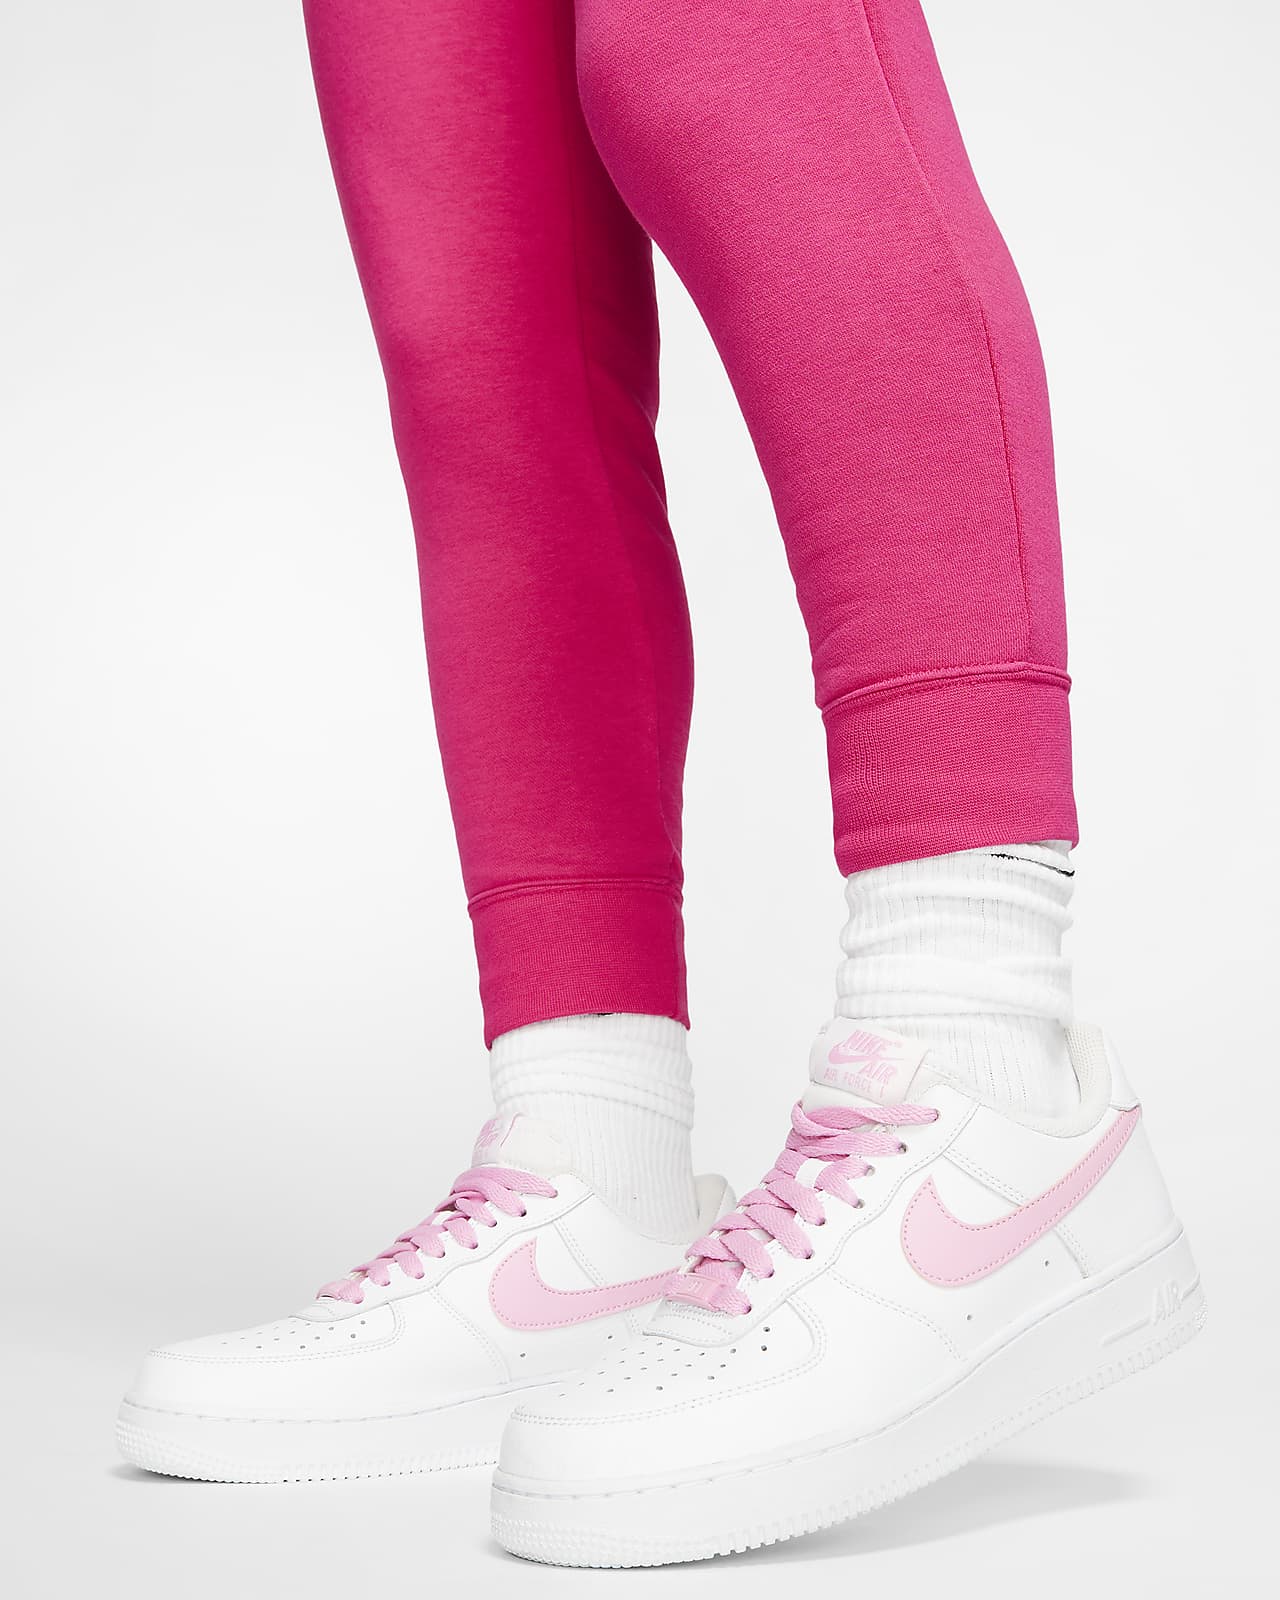 Pants and jeans Nike Sportswear Essential Women's Fleece Pants